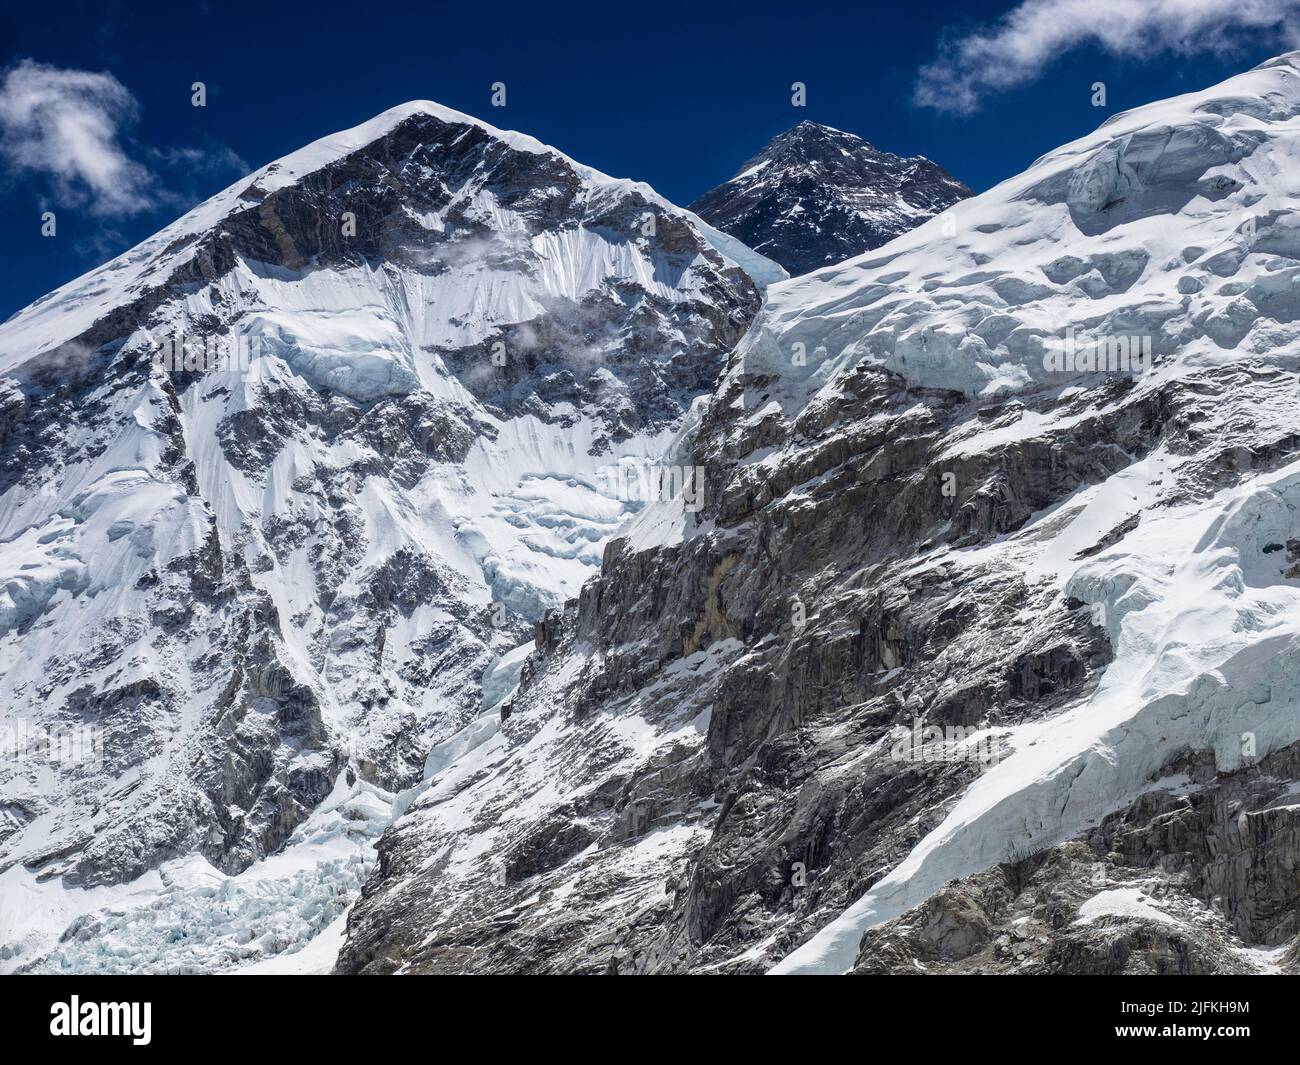 Die schwarze Gipfelpyramide des Mount Everest (8849m) hinter der West Shoulder und Nuptse über dem Khumbu-Gletscher Stockfoto